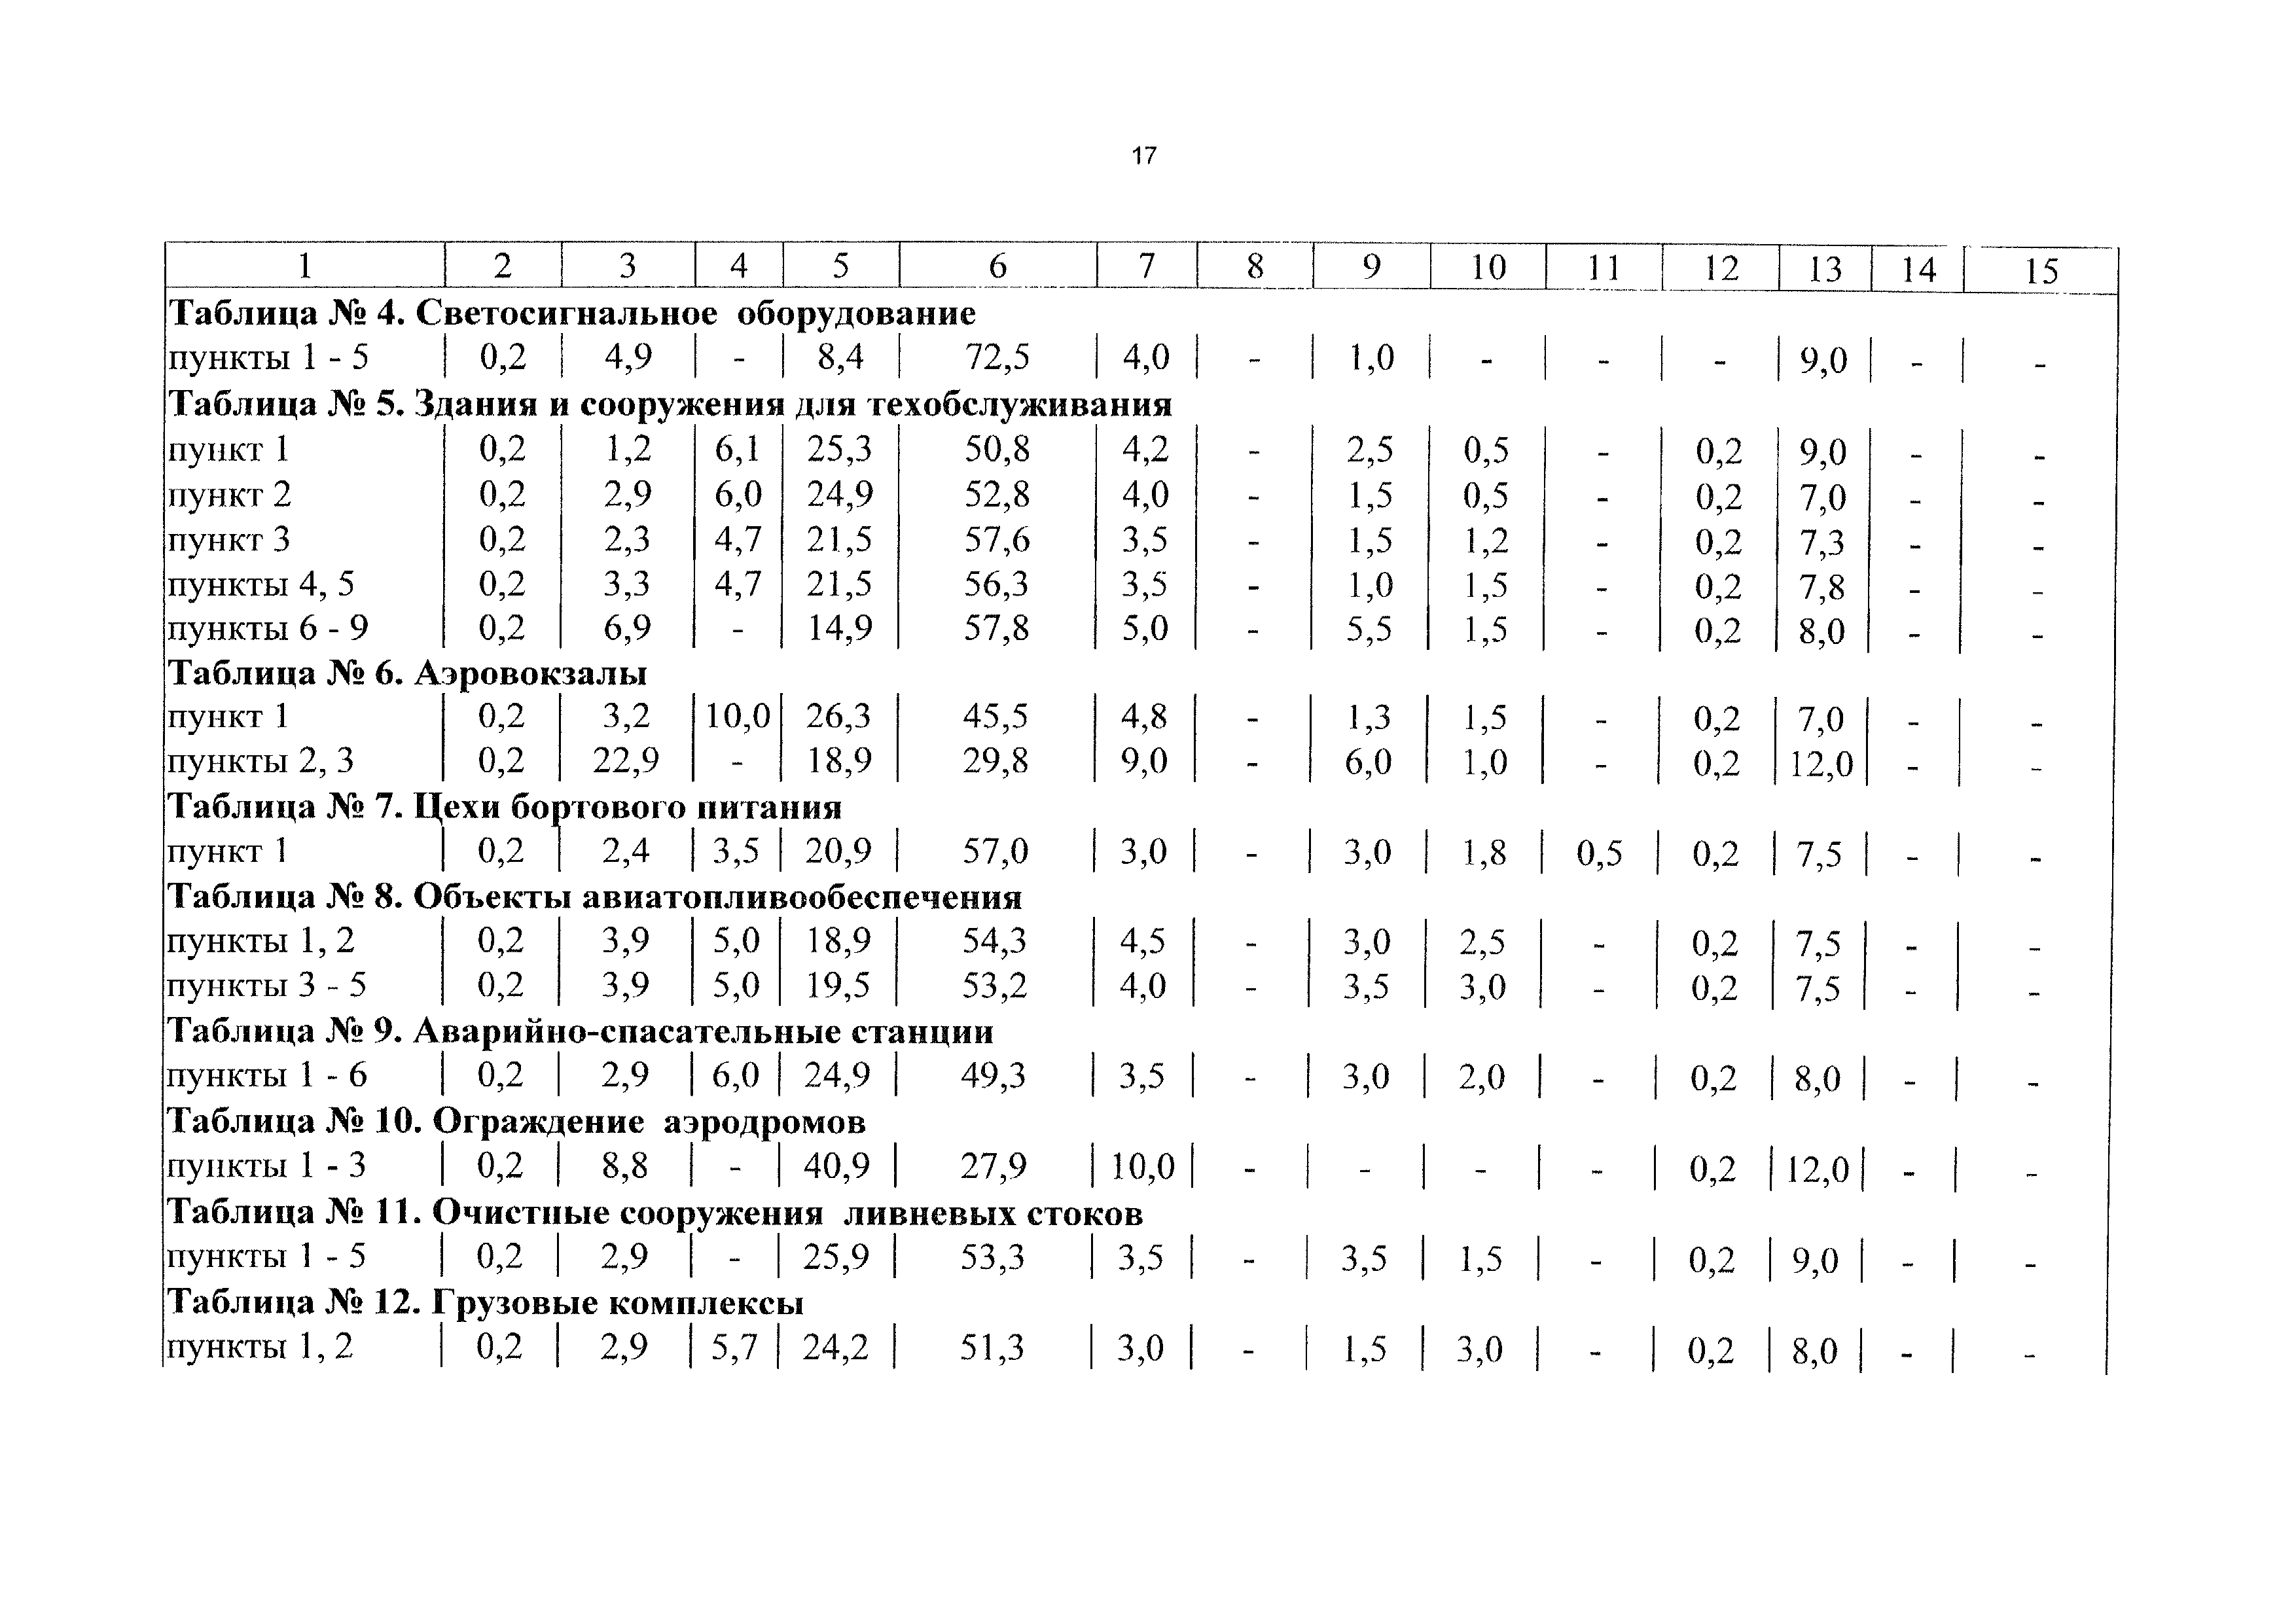 СБЦП 81-2001-12